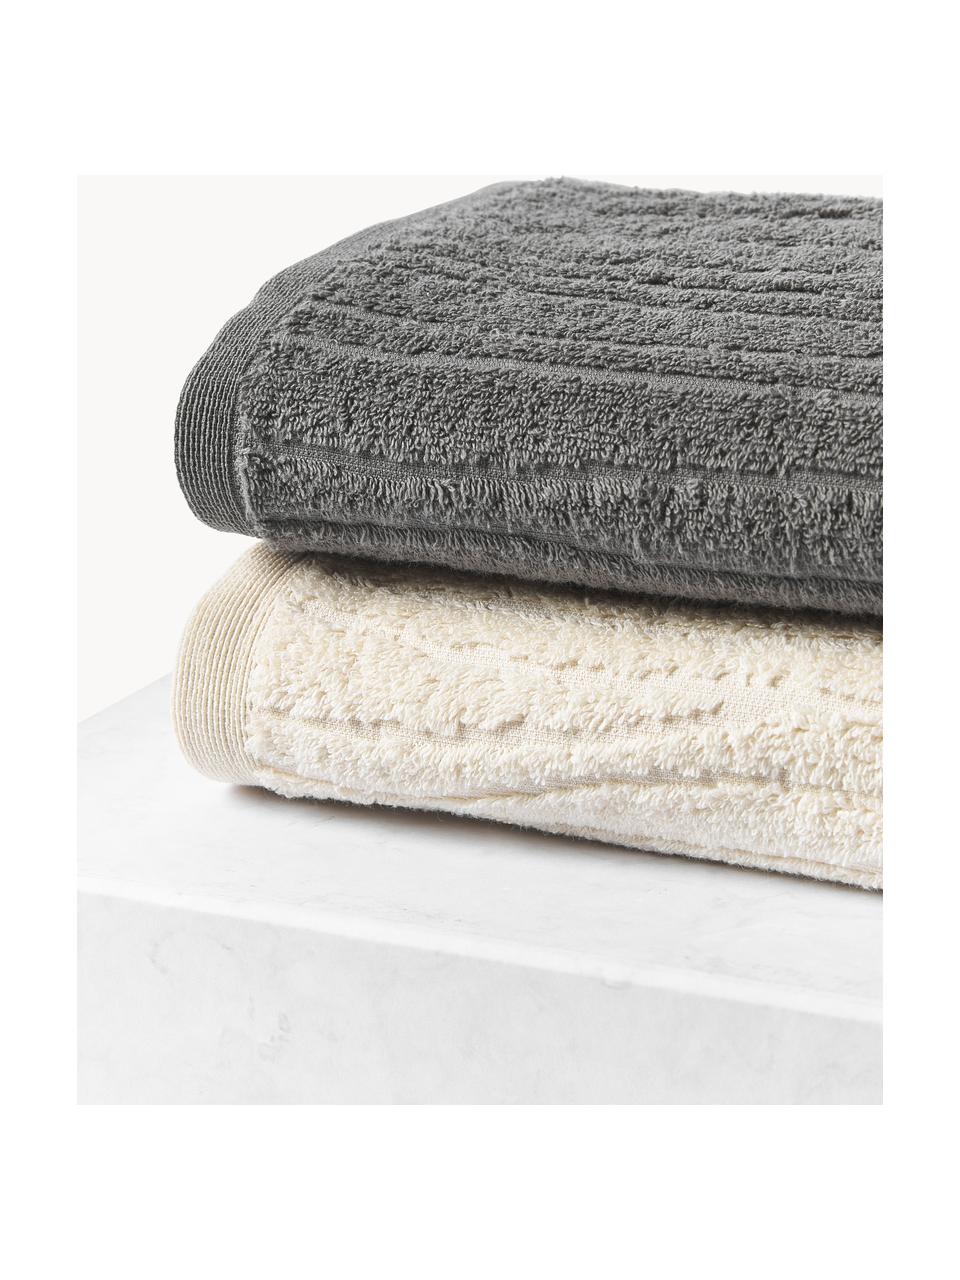 Komplet ręczników Audrina, różne rozmiary, Ciemny szary, 3 elem. (ręcznik dla gości, ręcznik do rąk, ręcznik kąpielowy)